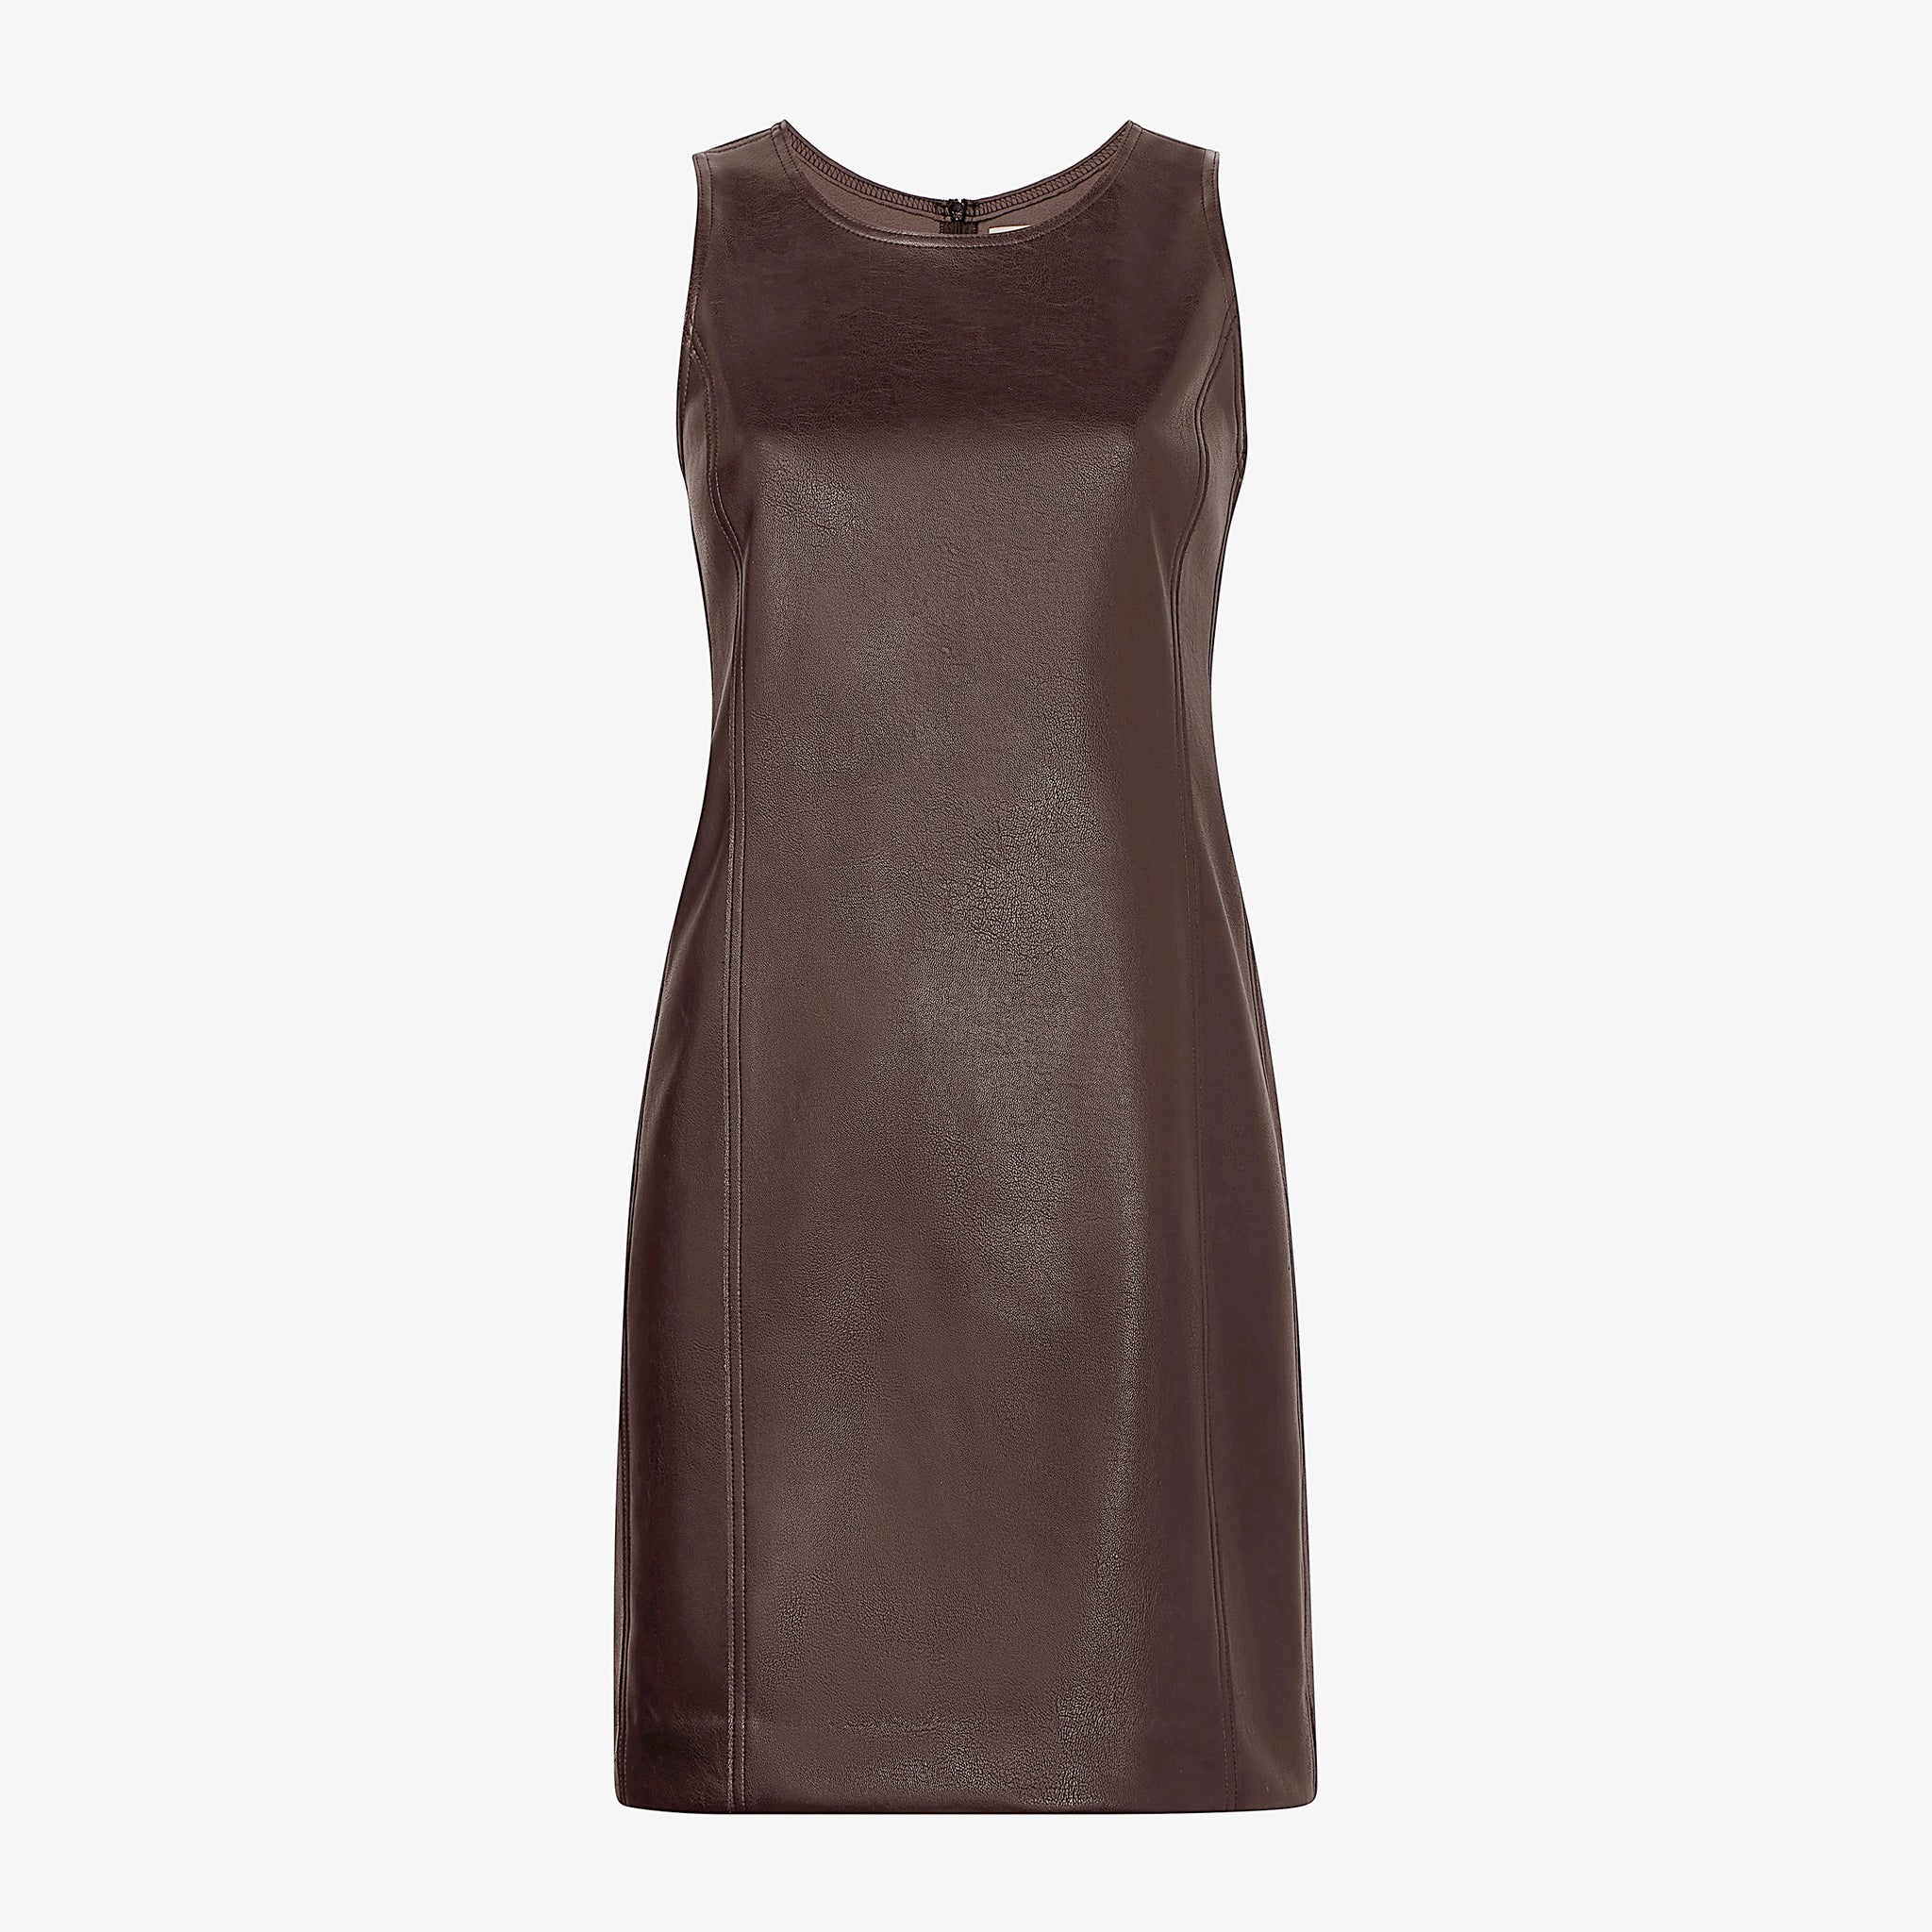 Packshot image of the Chloe Dress in Brown